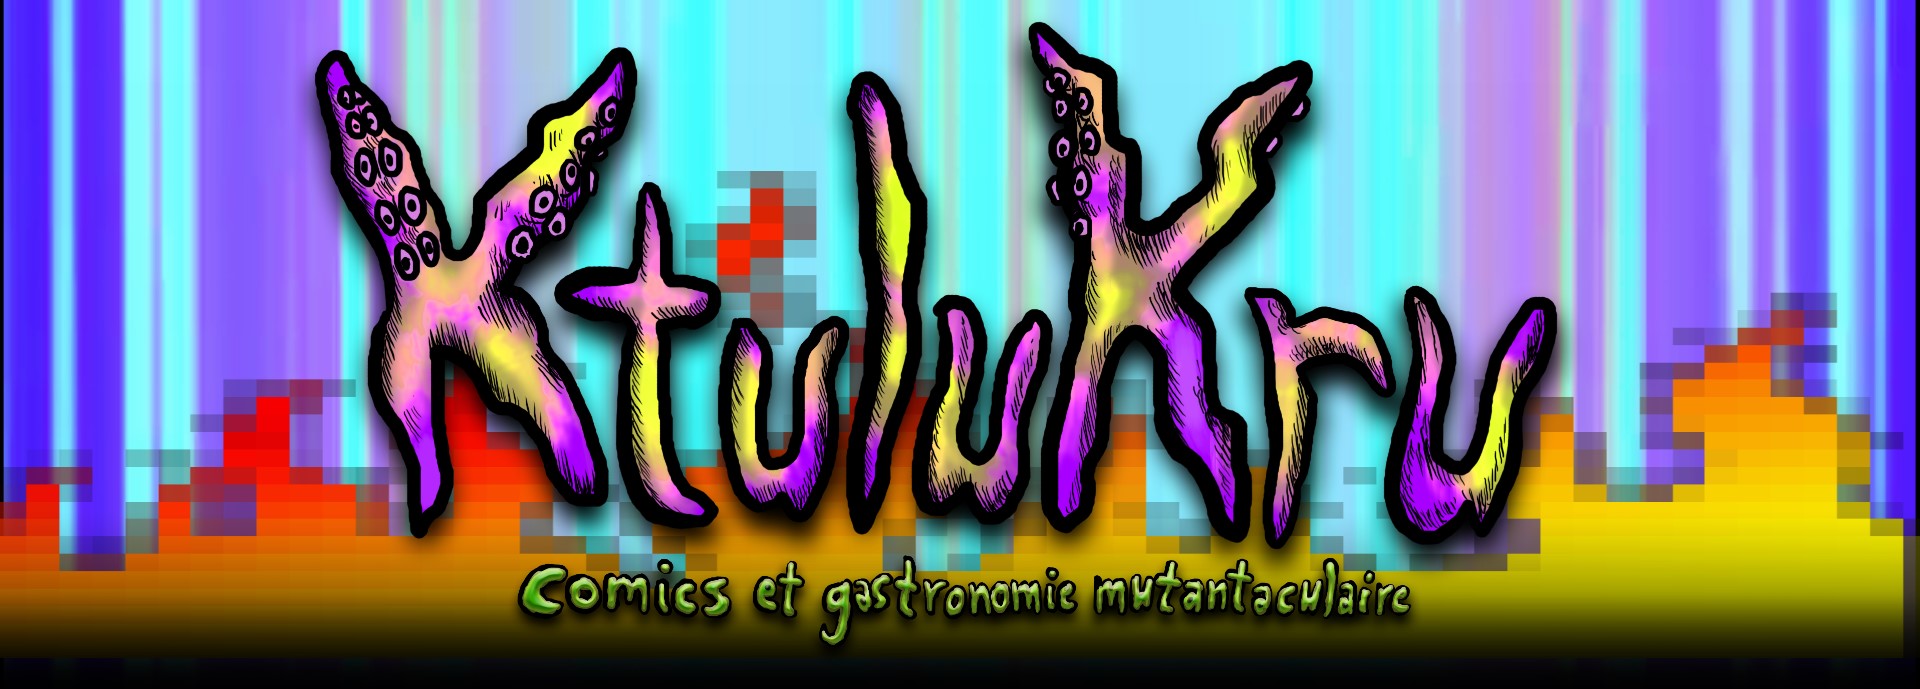 Ktulukru, la classe internationale en version poulpesque pour rongeurs et aliments mutants